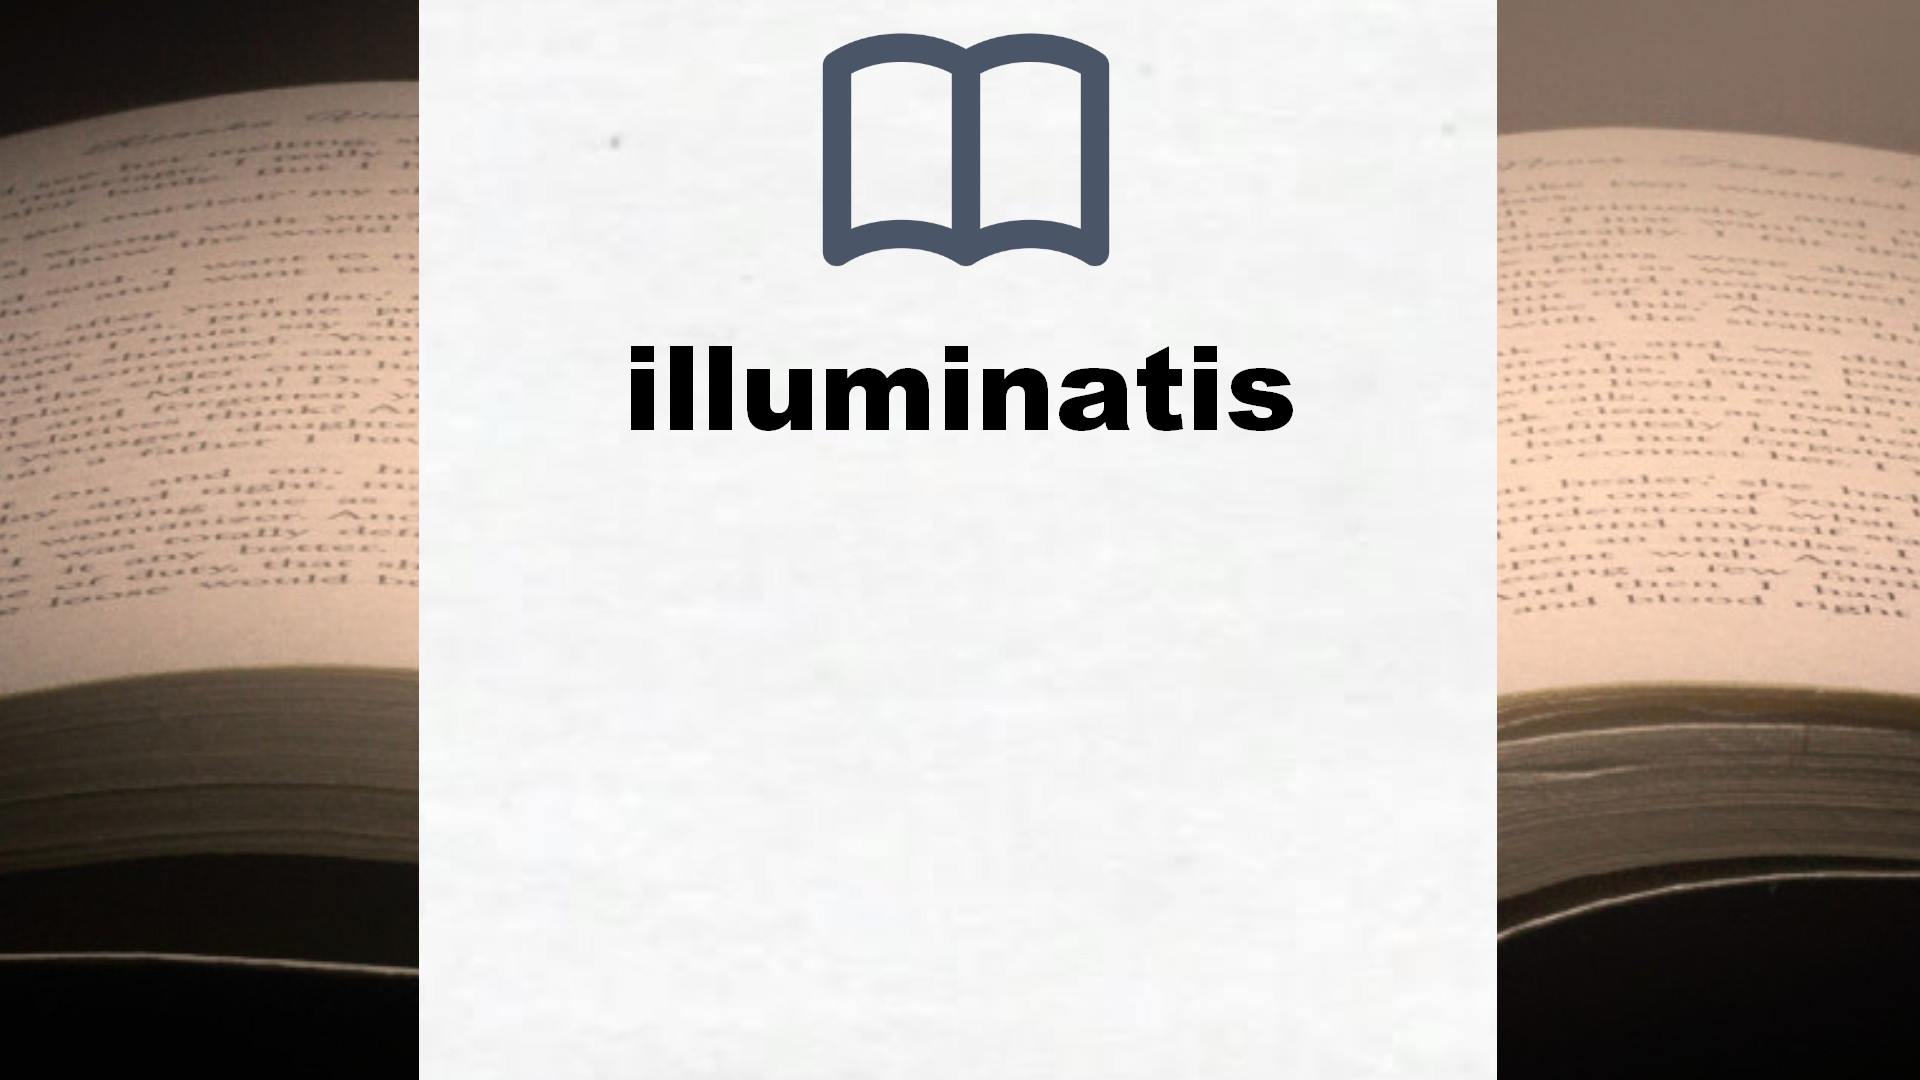 Libros sobre illuminatis